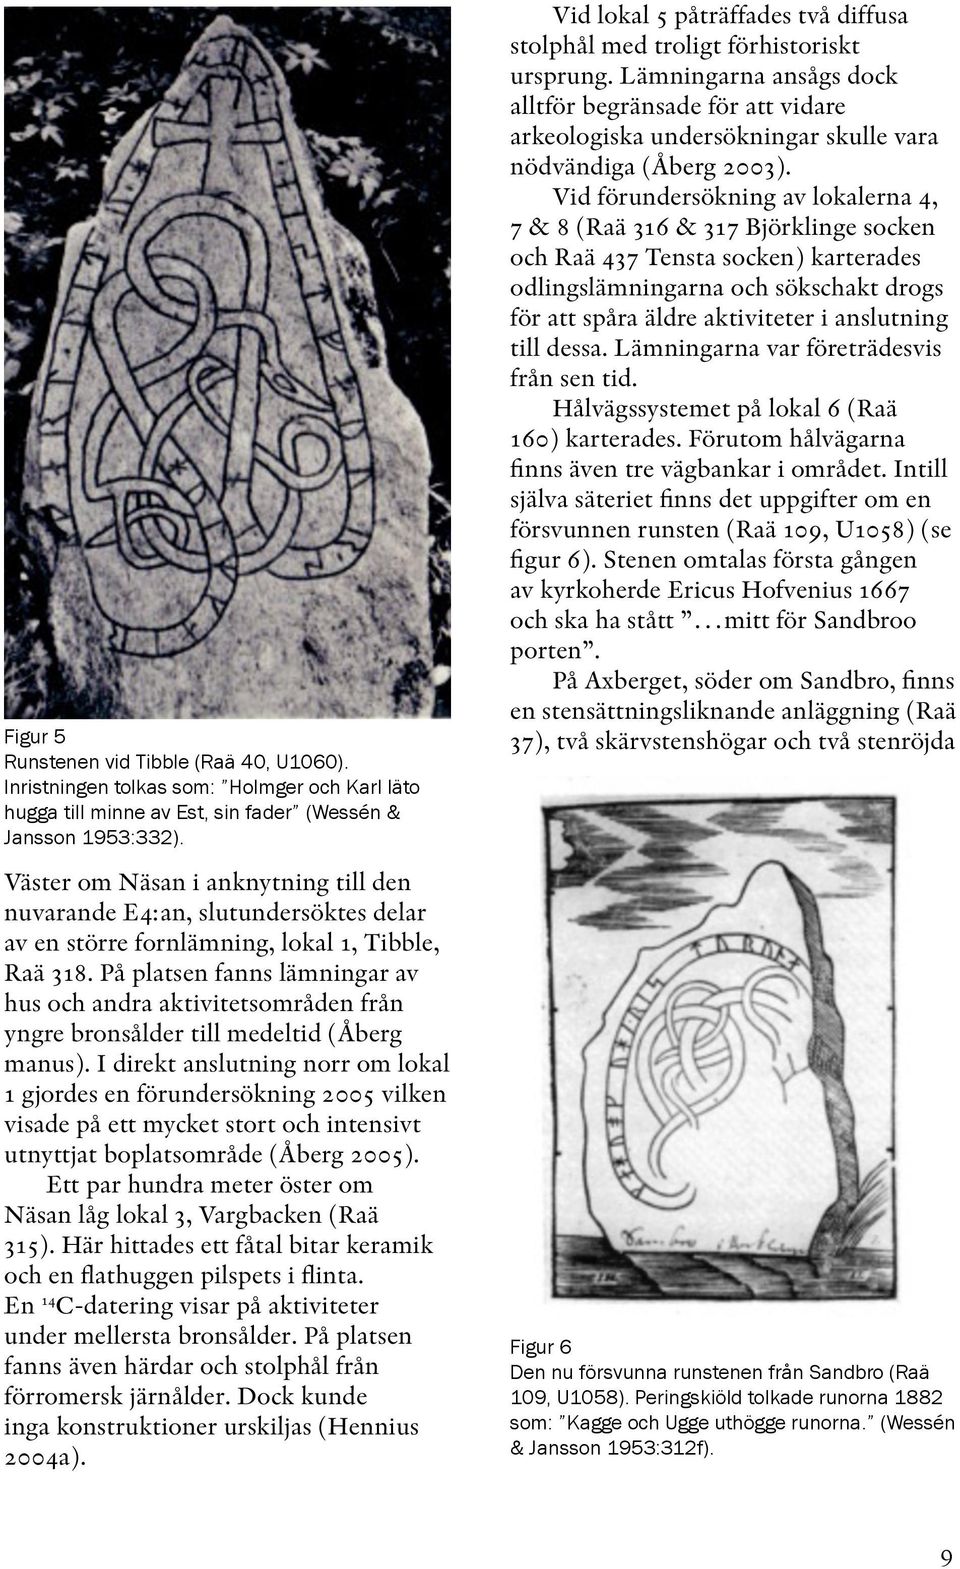 På platsen fanns lämningar av hus och andra aktivitetsområden från yngre bronsålder till medeltid (Åberg manus).